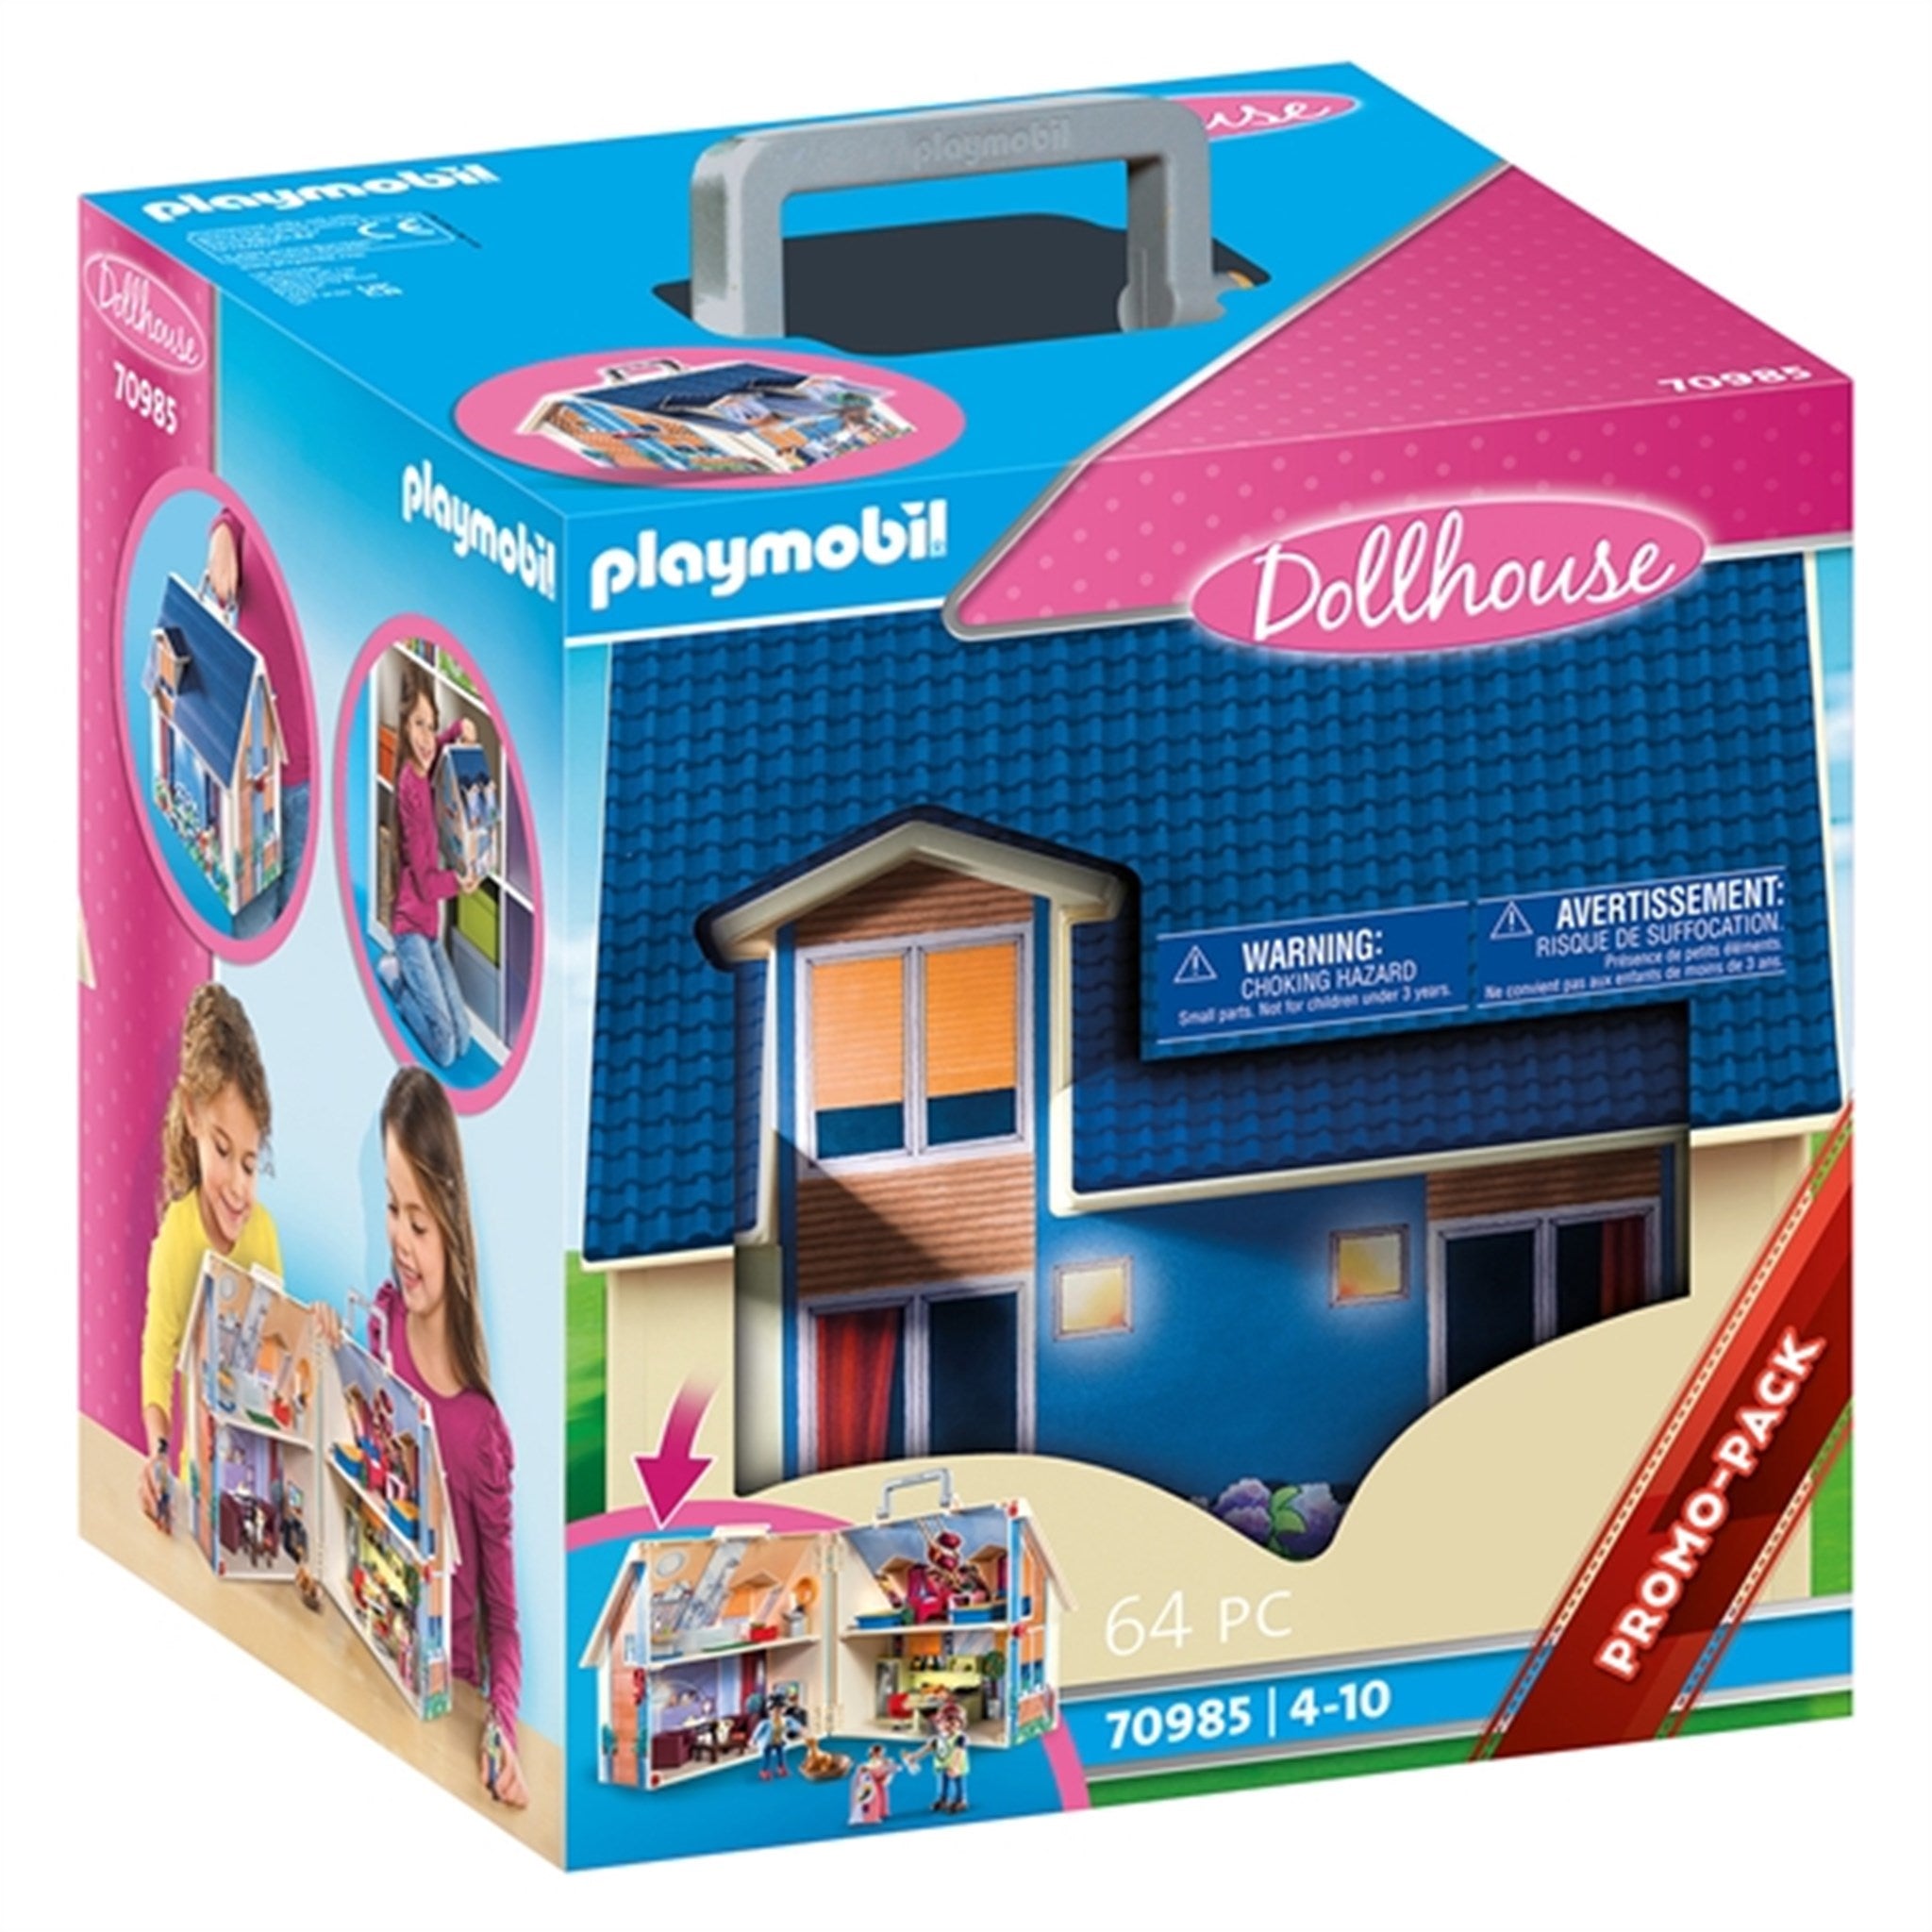 Playmobil® Dollhouse - Take Along Dollhouse